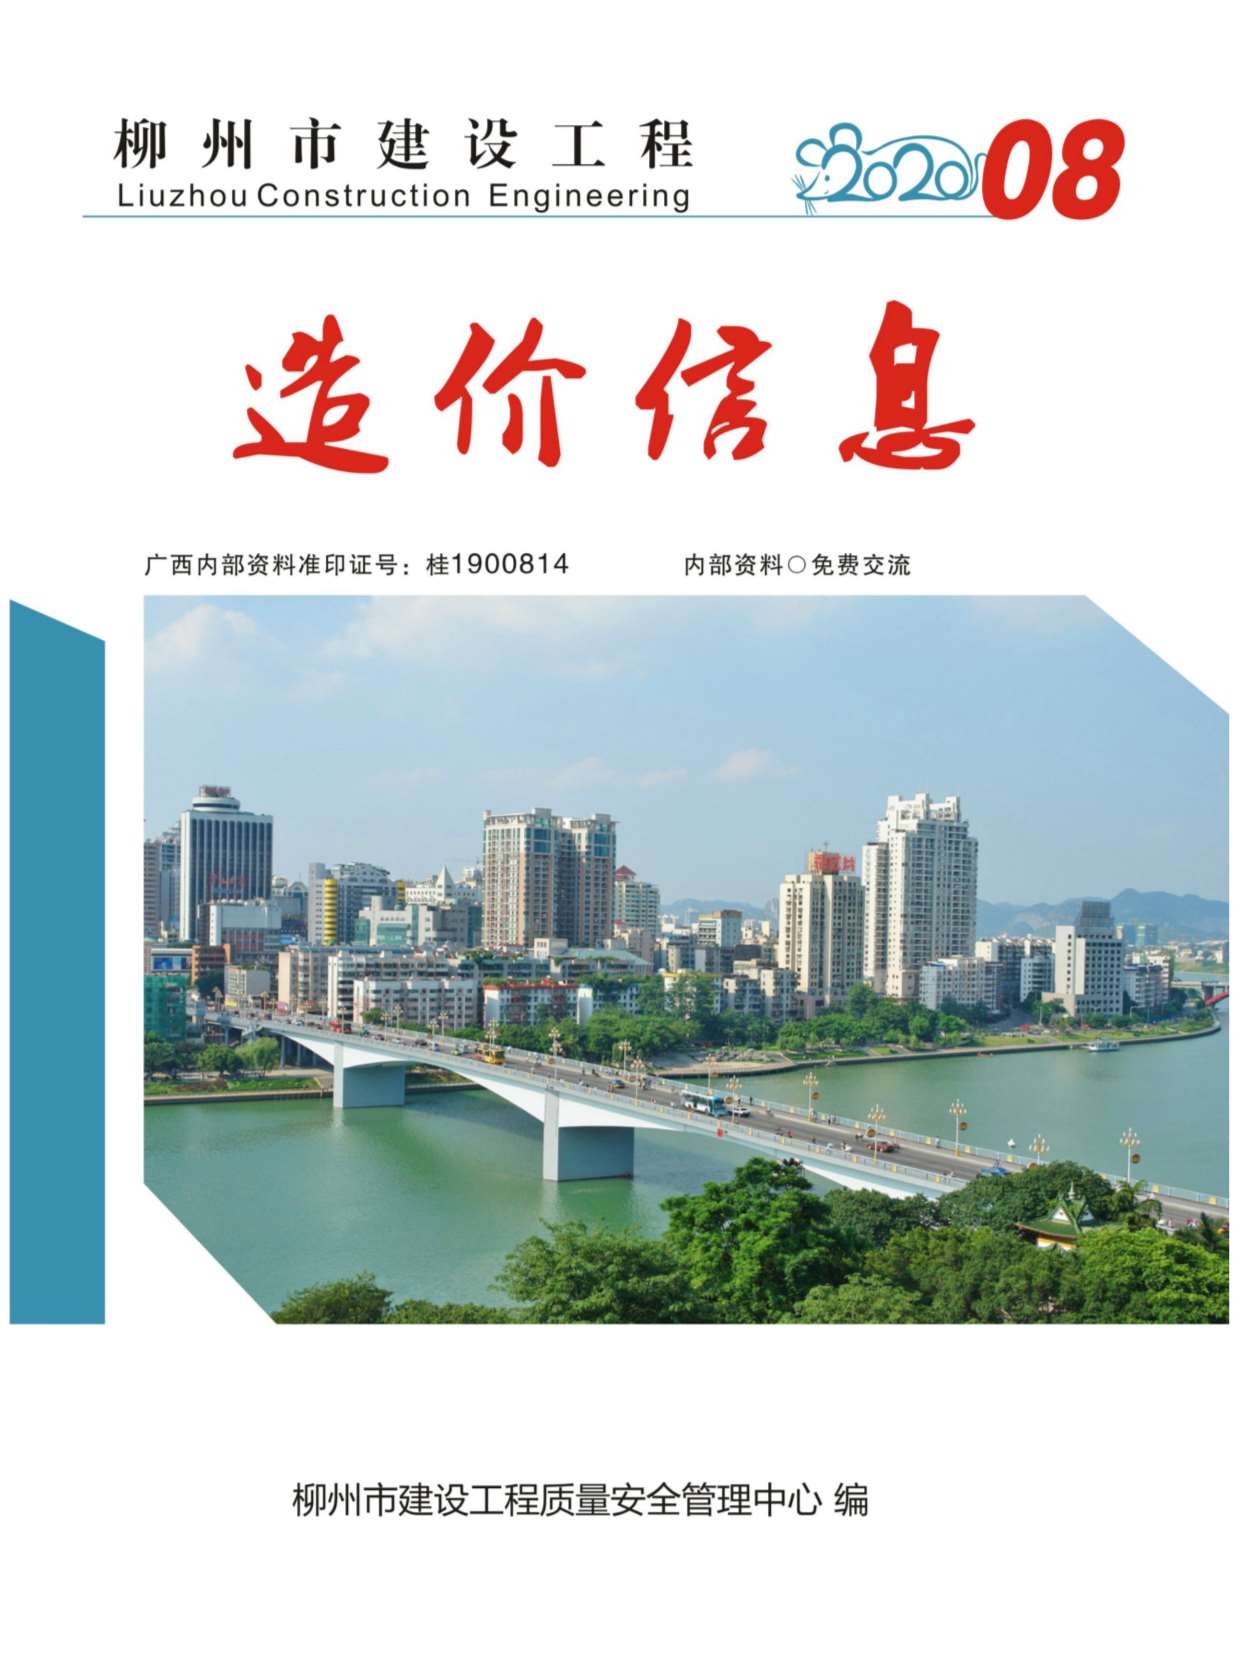 柳州市2020年8月造价信息